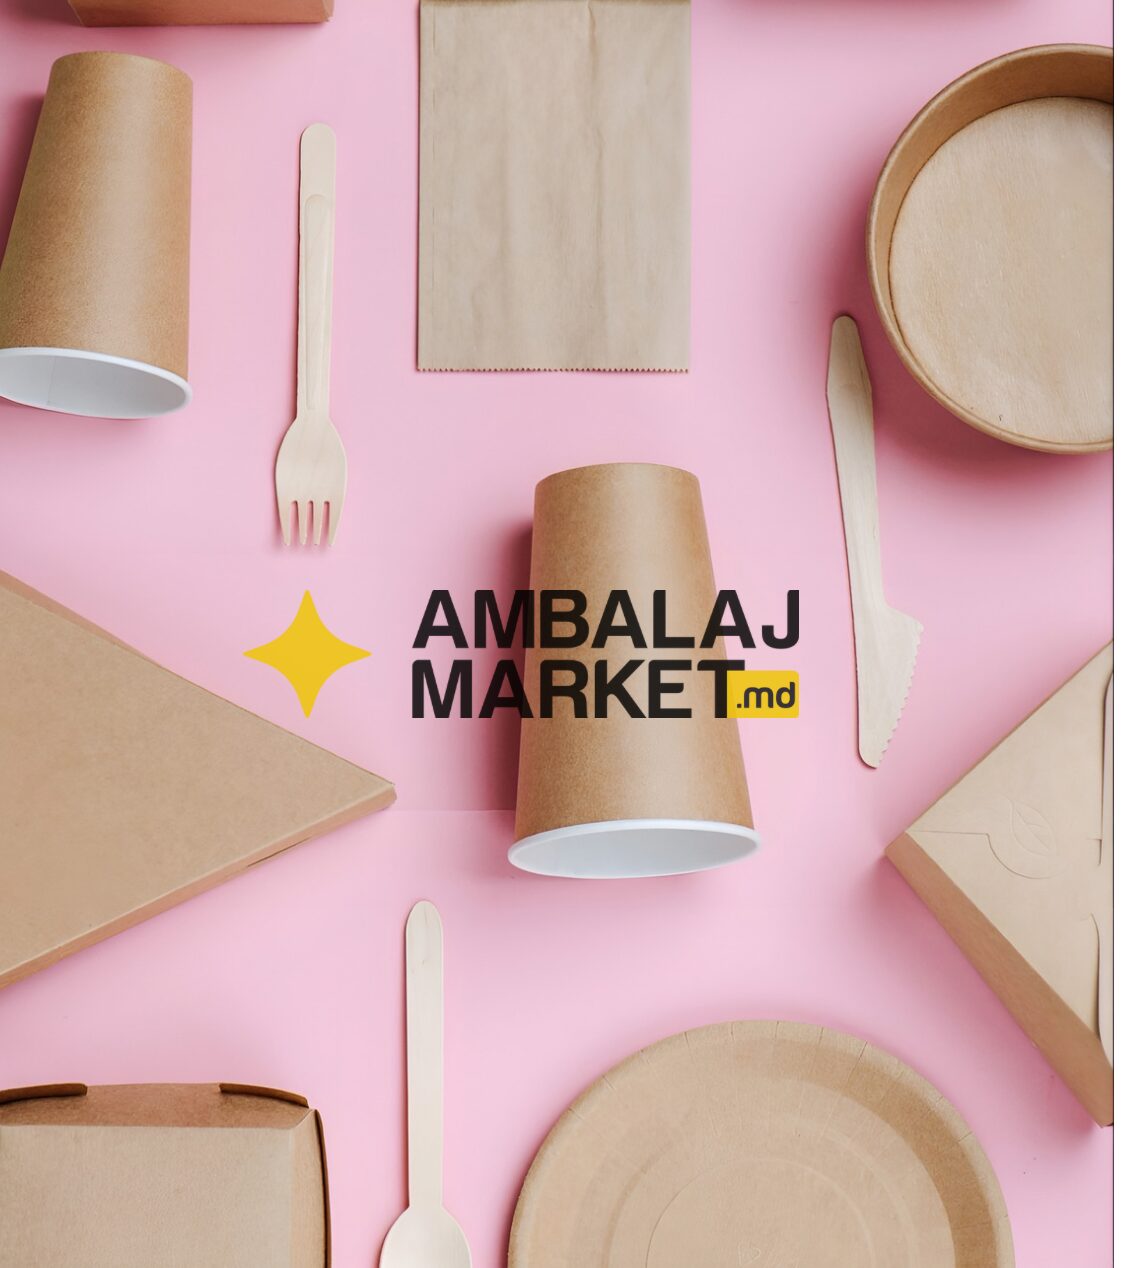 Молдова может стать более устойчивой и экологичной. Почему стоит познакомиться с Ambalajmarket?